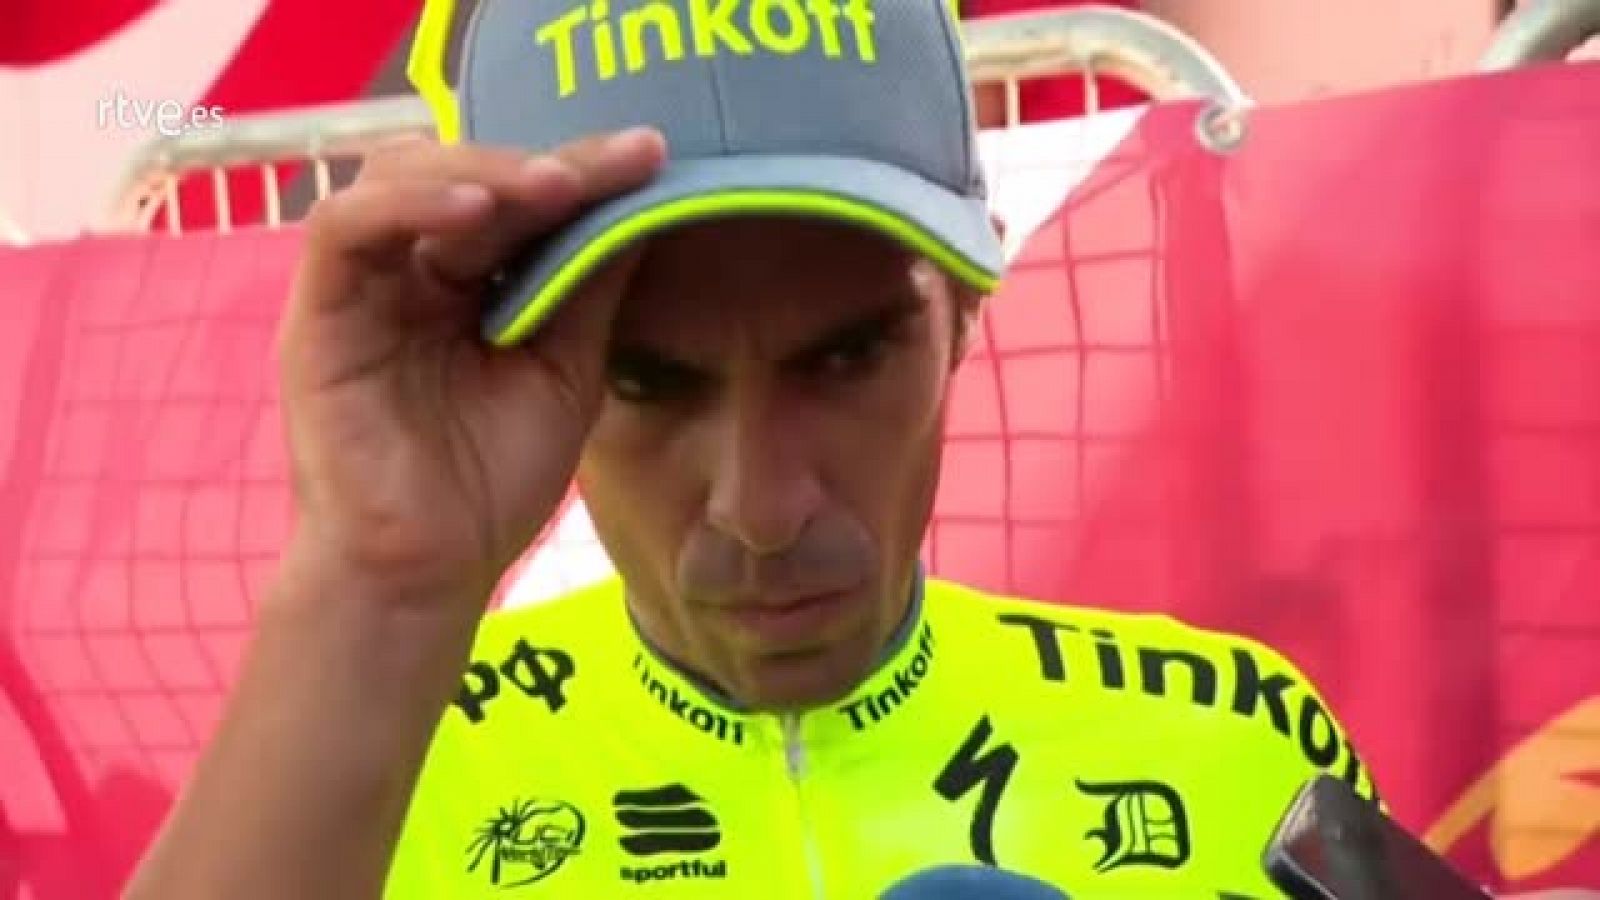 El ciclista español Alberto Contador consideró hoy que, aunque la tercera etapa de la Vuelta a España "no fue un buen día en general" para él, la competición "está lejos de terminar" y las diferencias de tiempo "todavía no son muy grandes".